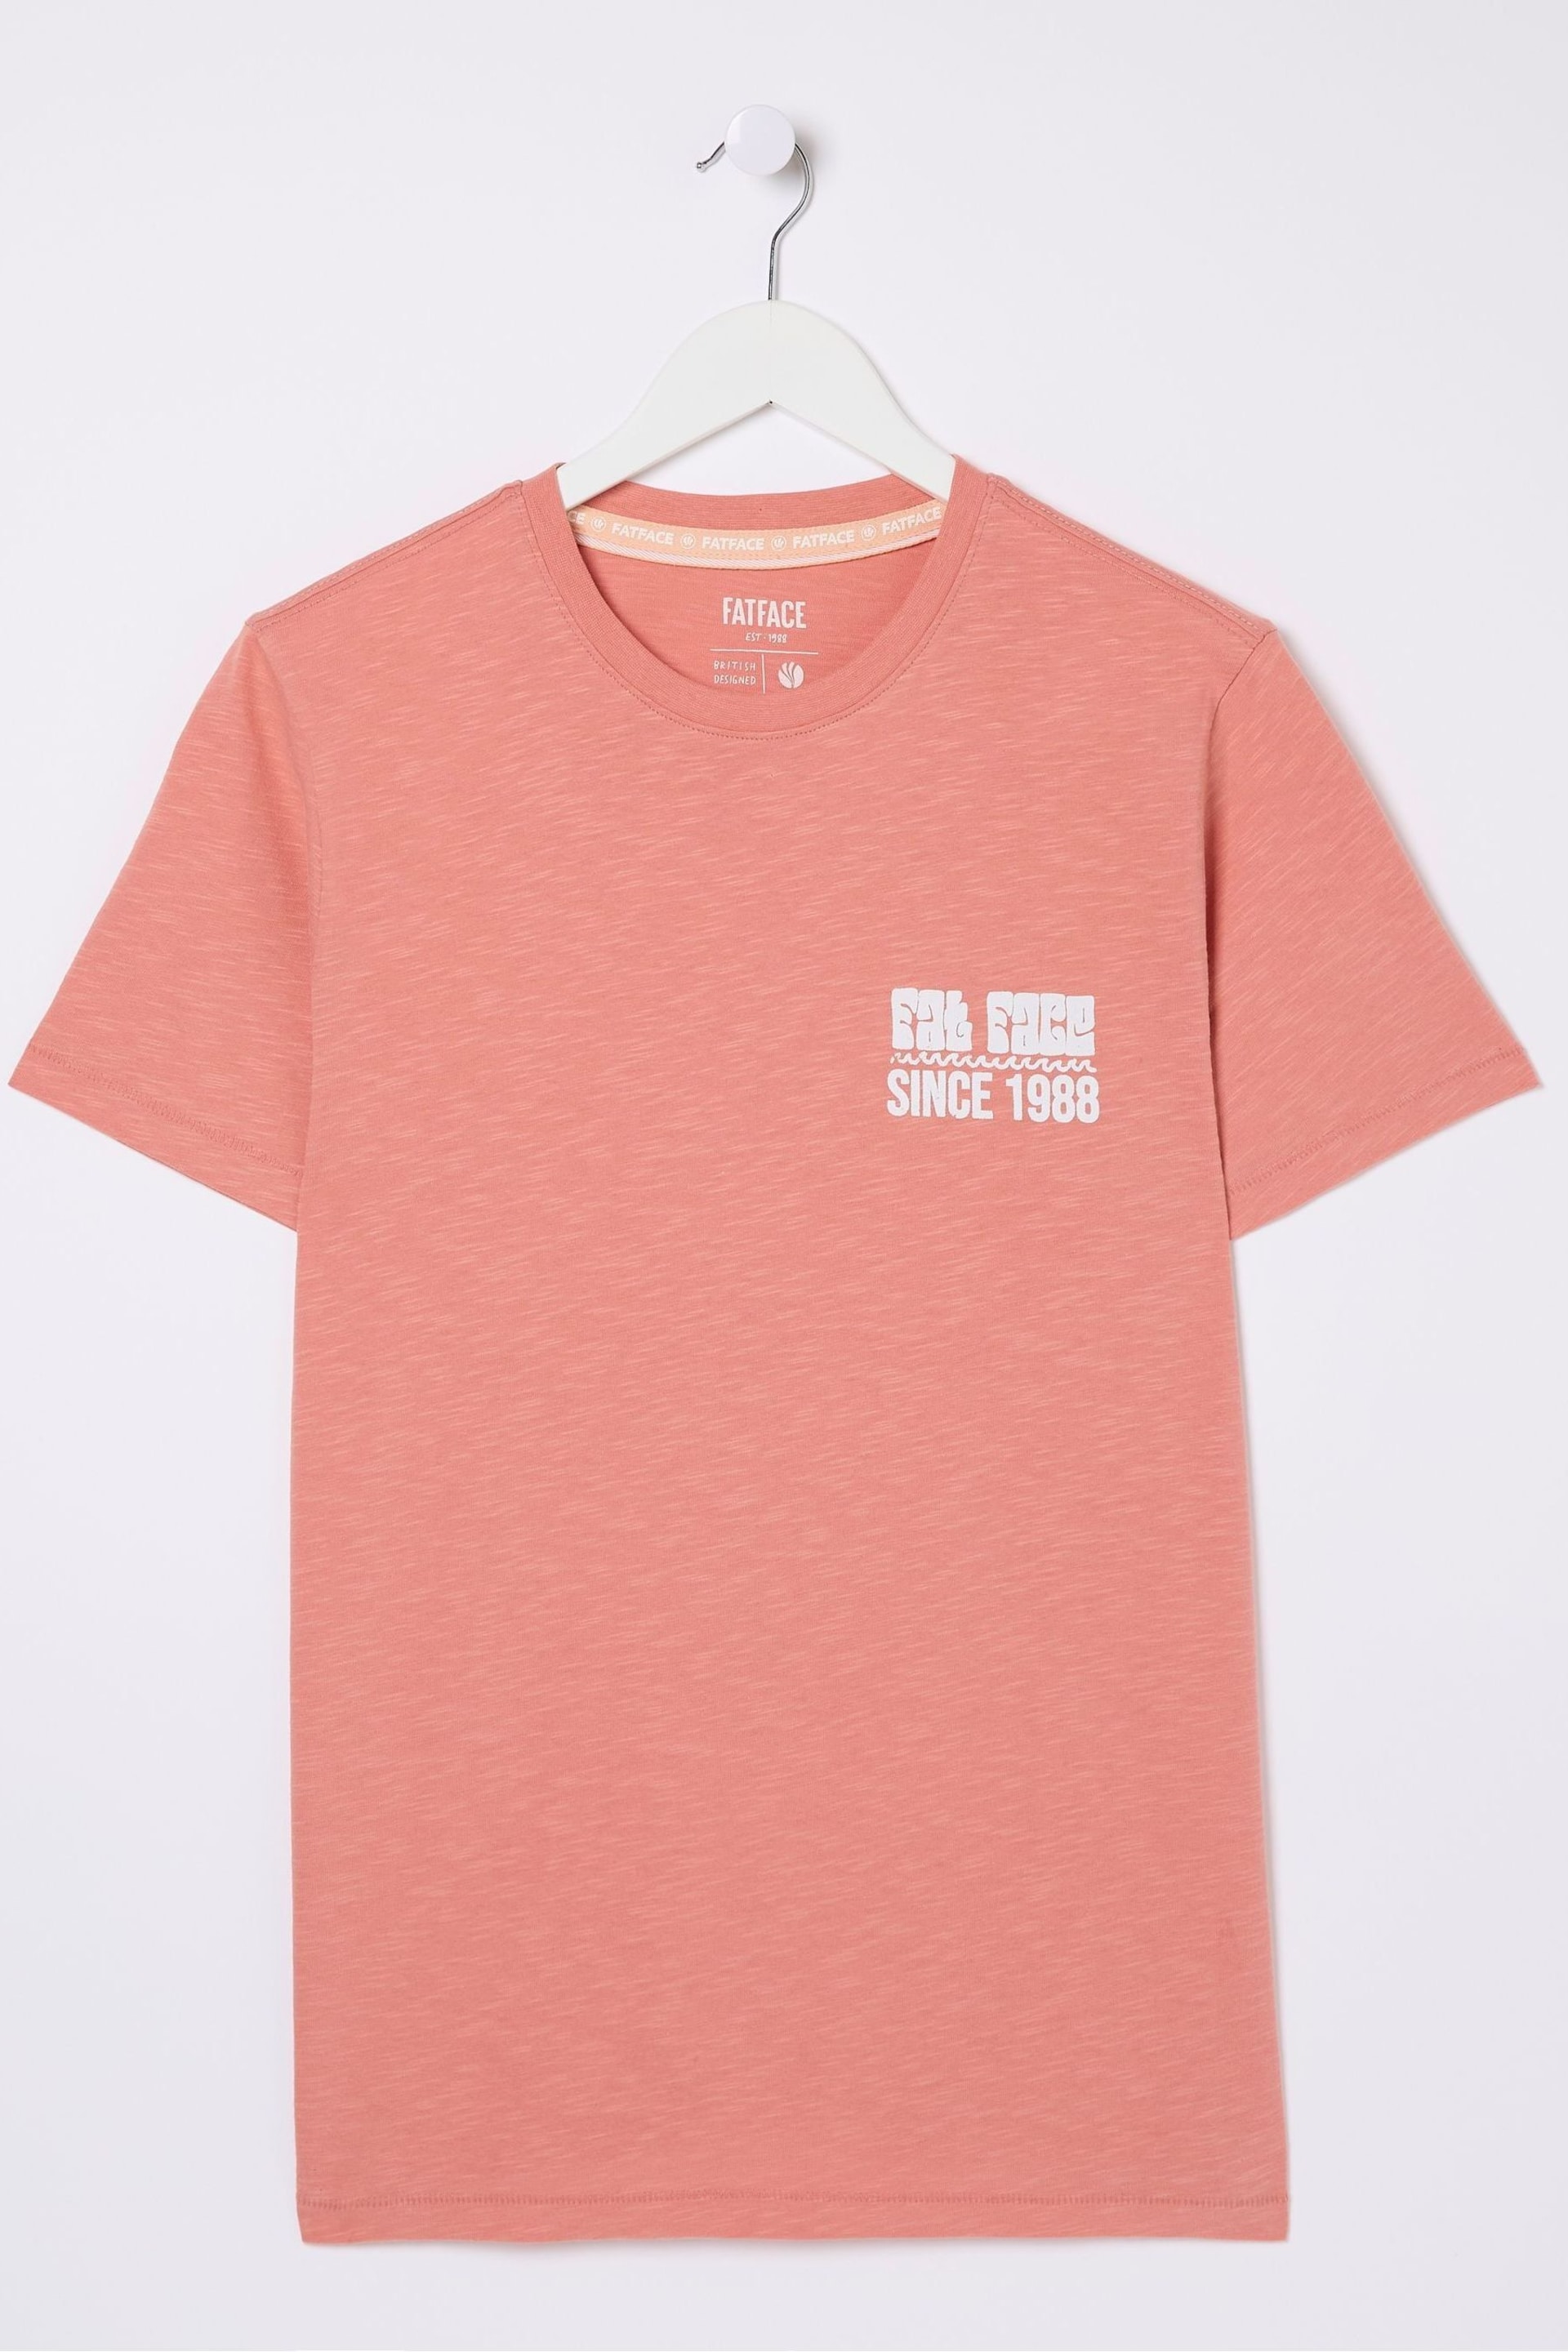 FatFace Orange Sea La Vie T-Shirt - Image 6 of 7